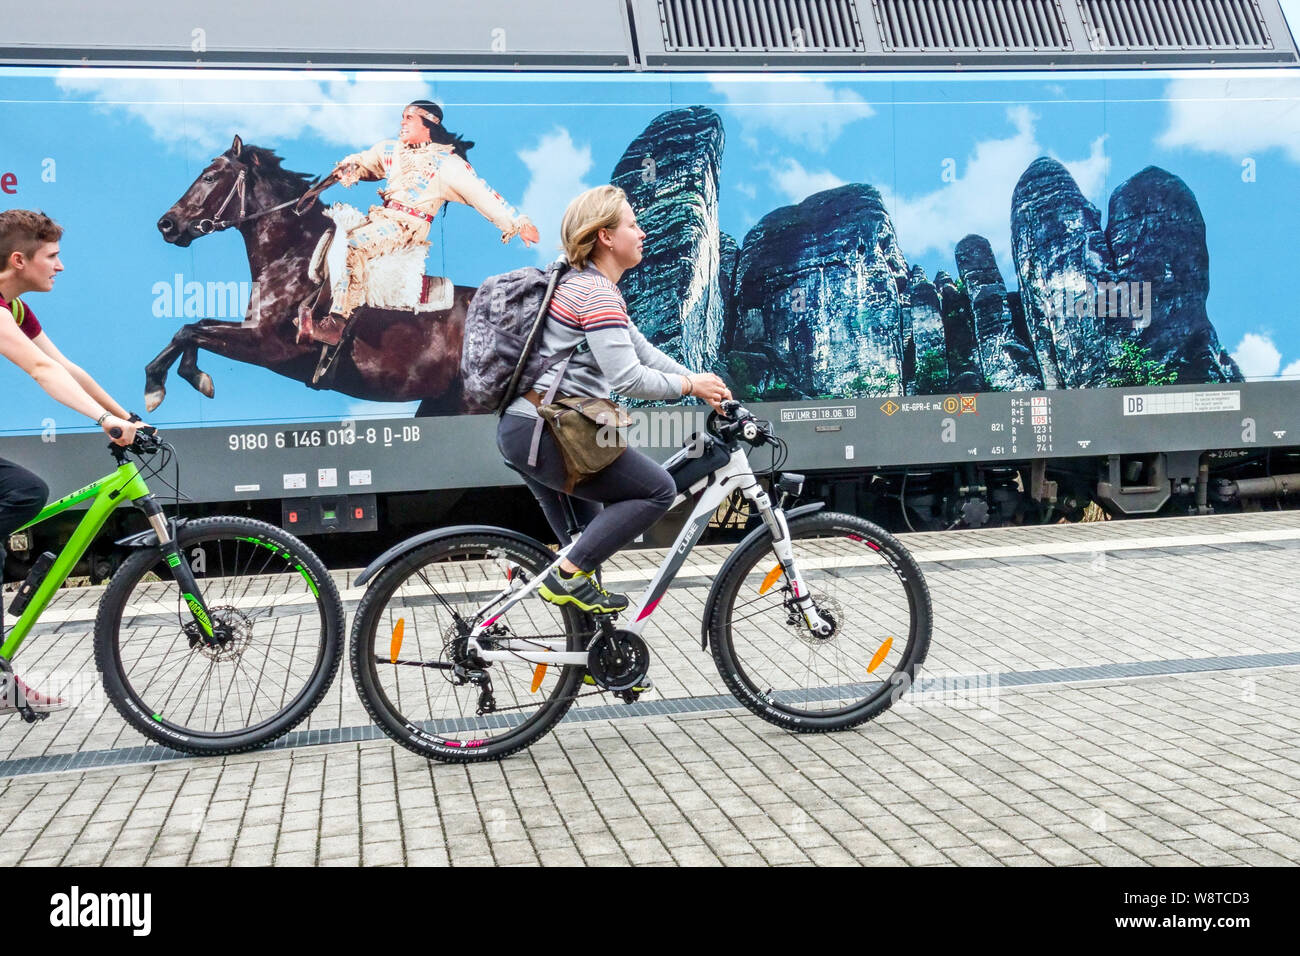 Los ciclistas alemanes viajan alrededor del anuncio del festival en Kurort Rathen. Winnetou a caballo y acantilados de arenisca de Bastei Alemania Indians fest Foto de stock